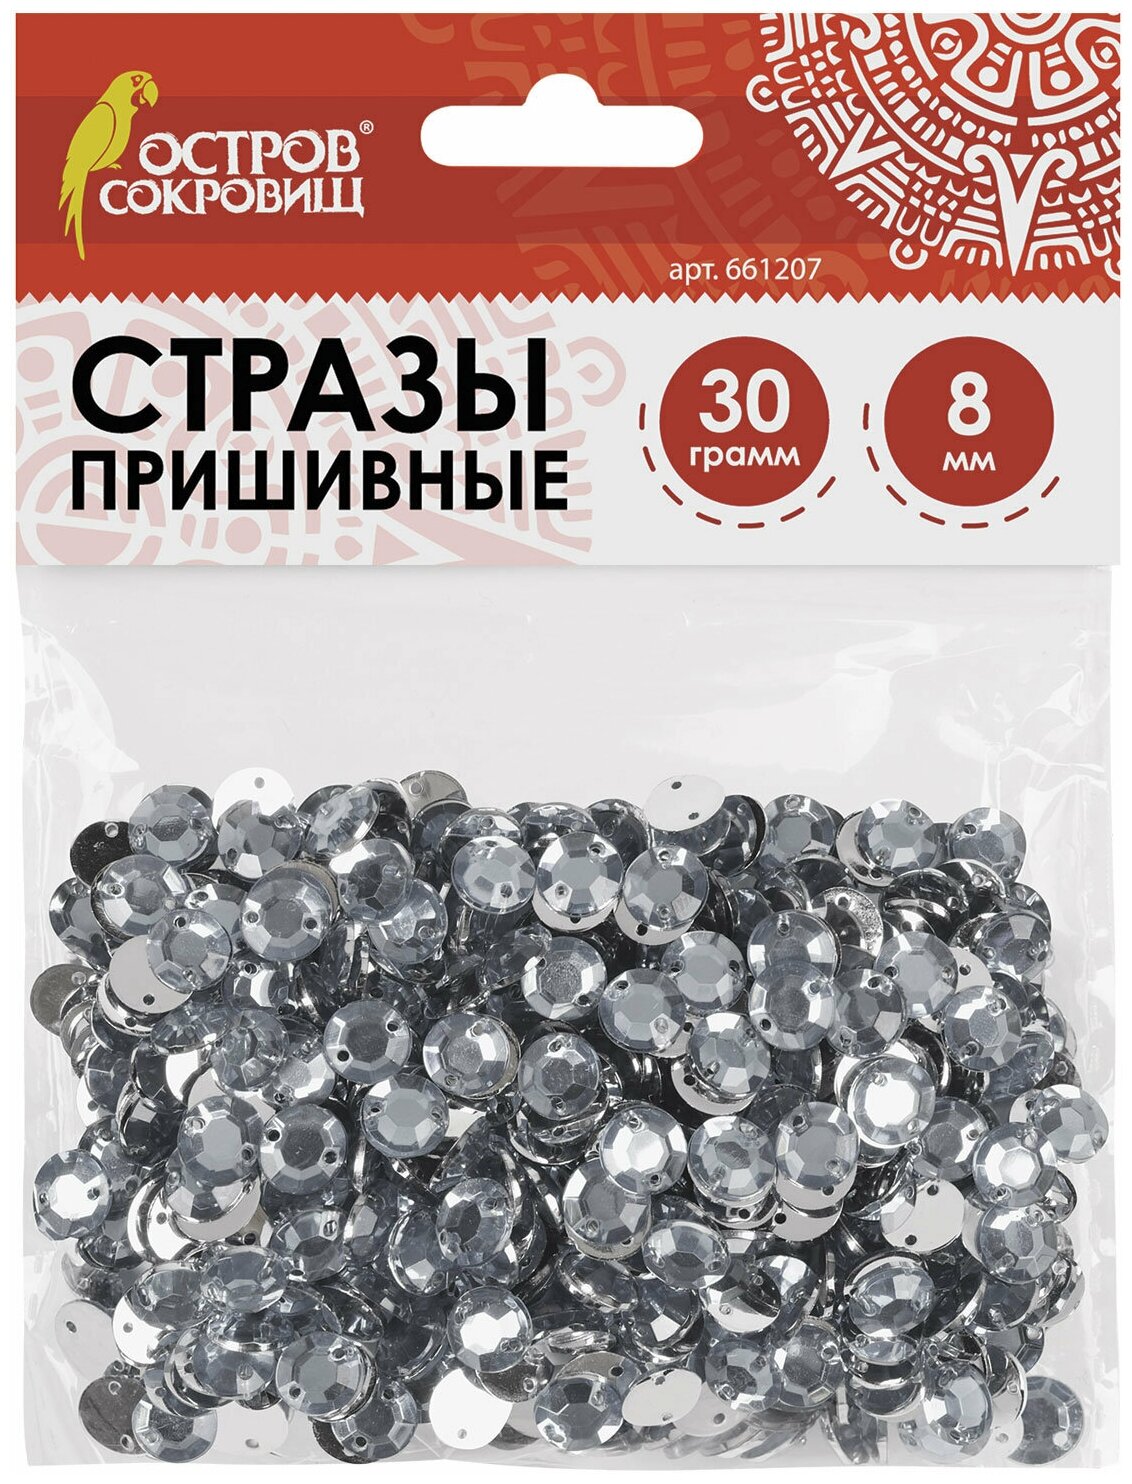 Стразы для творчества "Круглые", серебро, 8 мм, 30 грамм, остров сокровищ, 661207